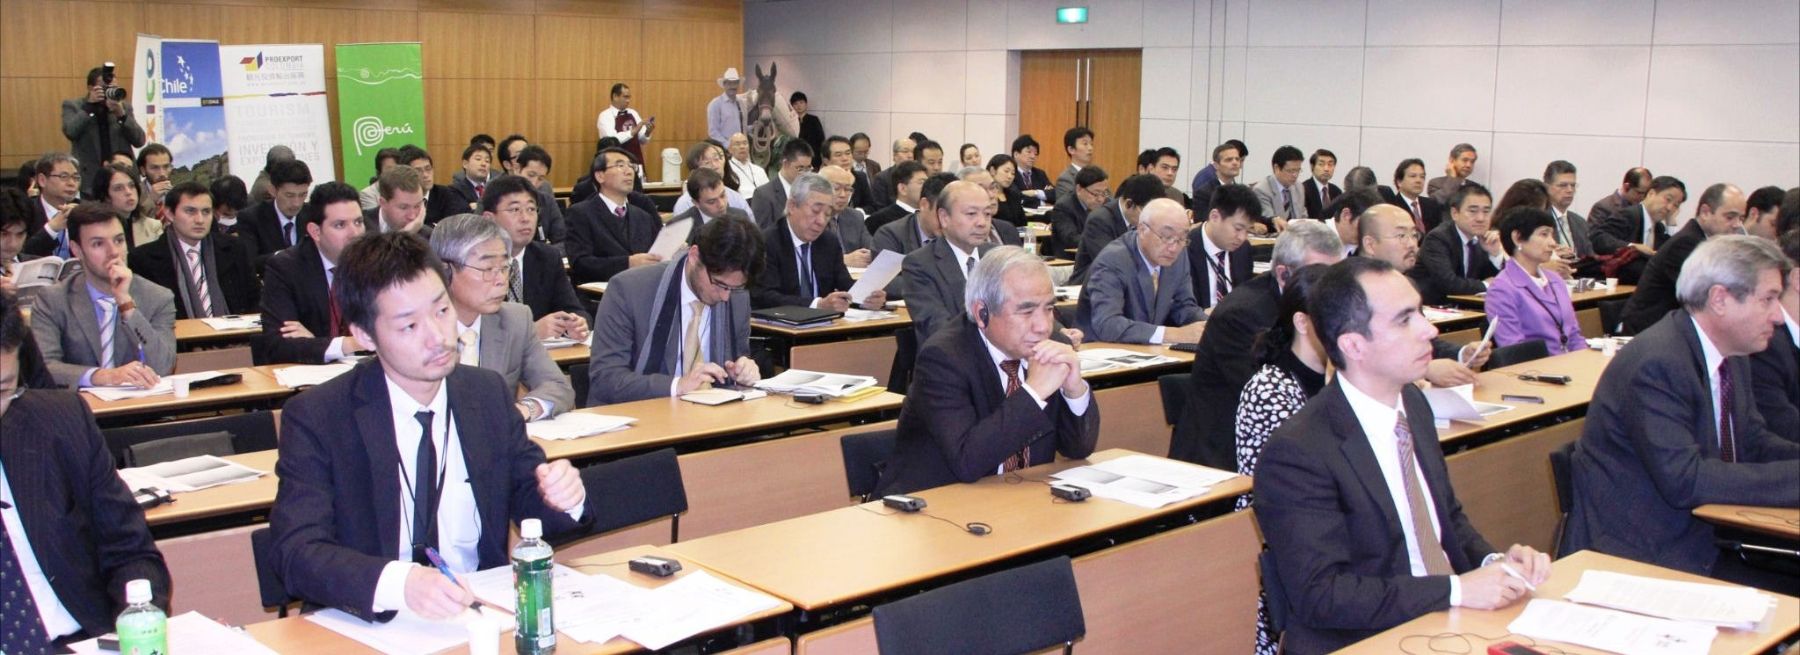 Conferencia La Alianza del Pacífico: Oportunidades para los negocios en Japón, realizada en Tokio.